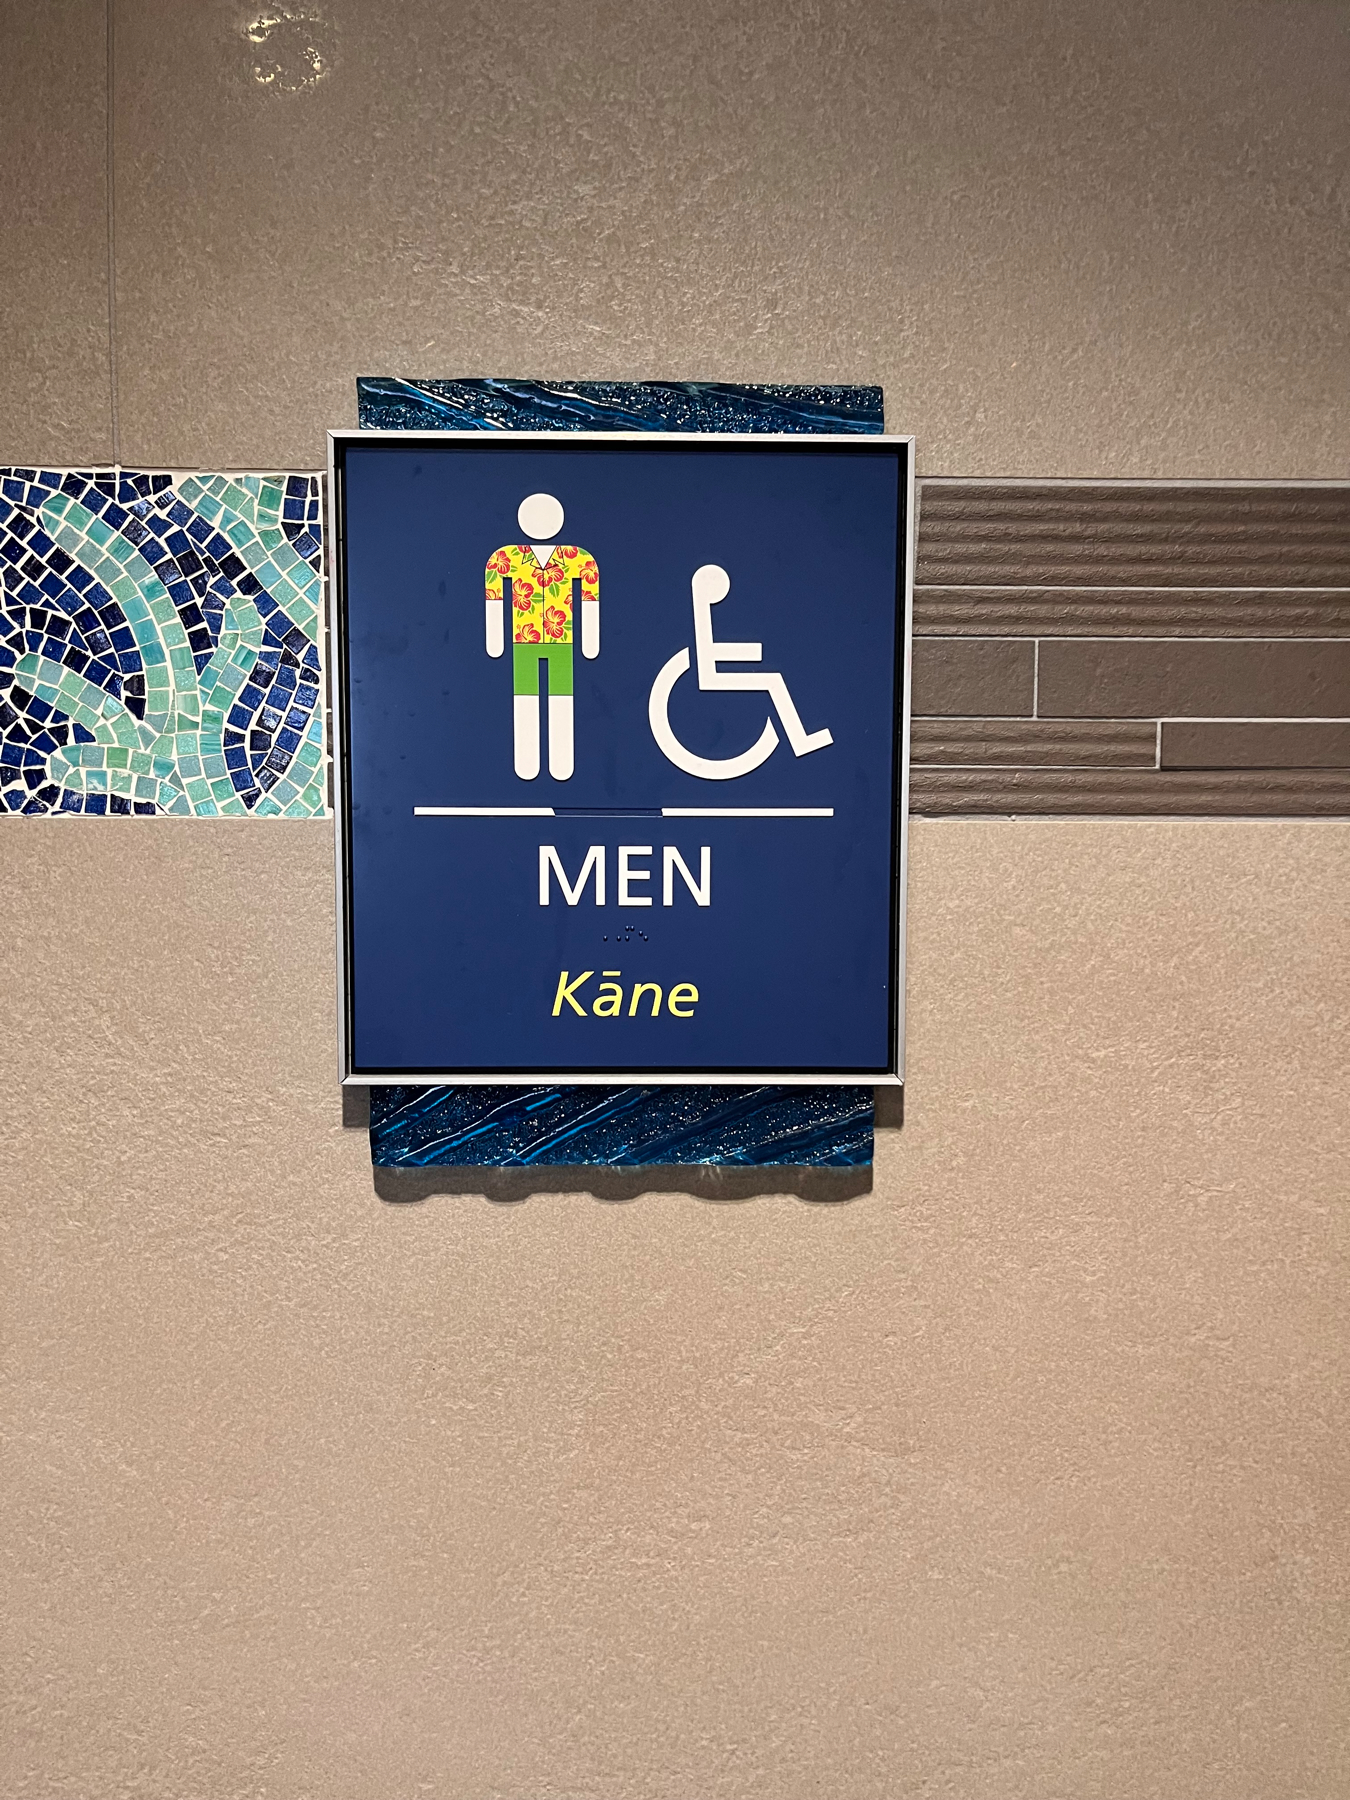 Men’s restroom Honolulu airport